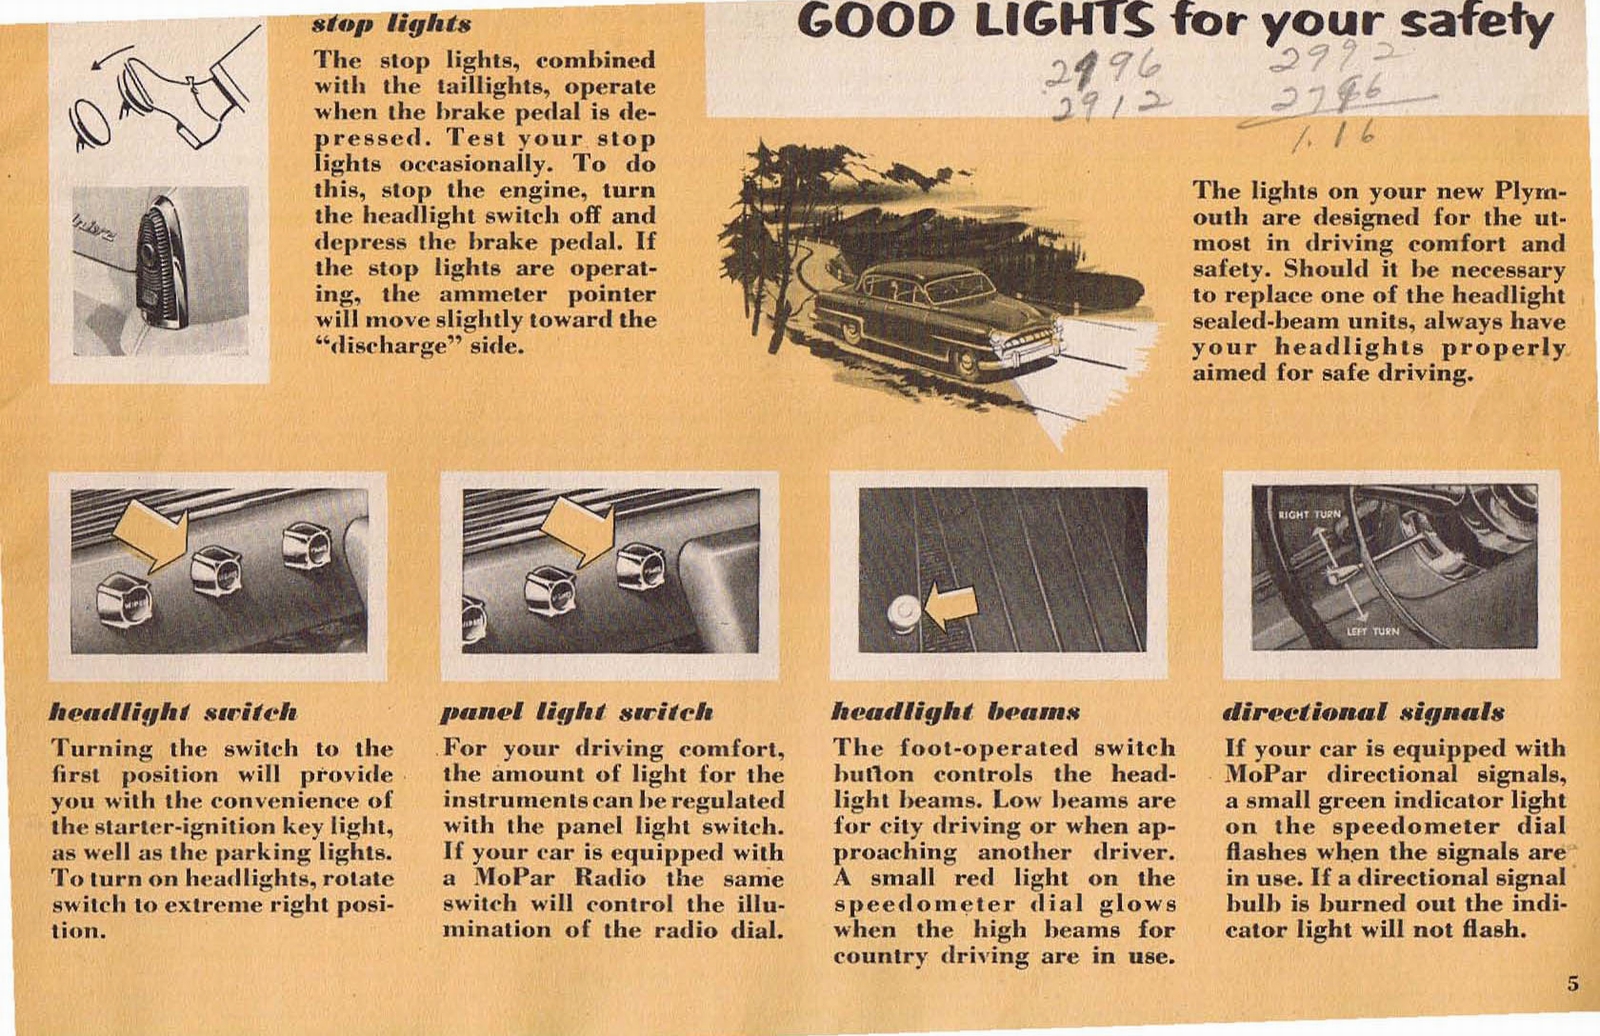 n_1953 Plymouth Owners Manual-05.jpg